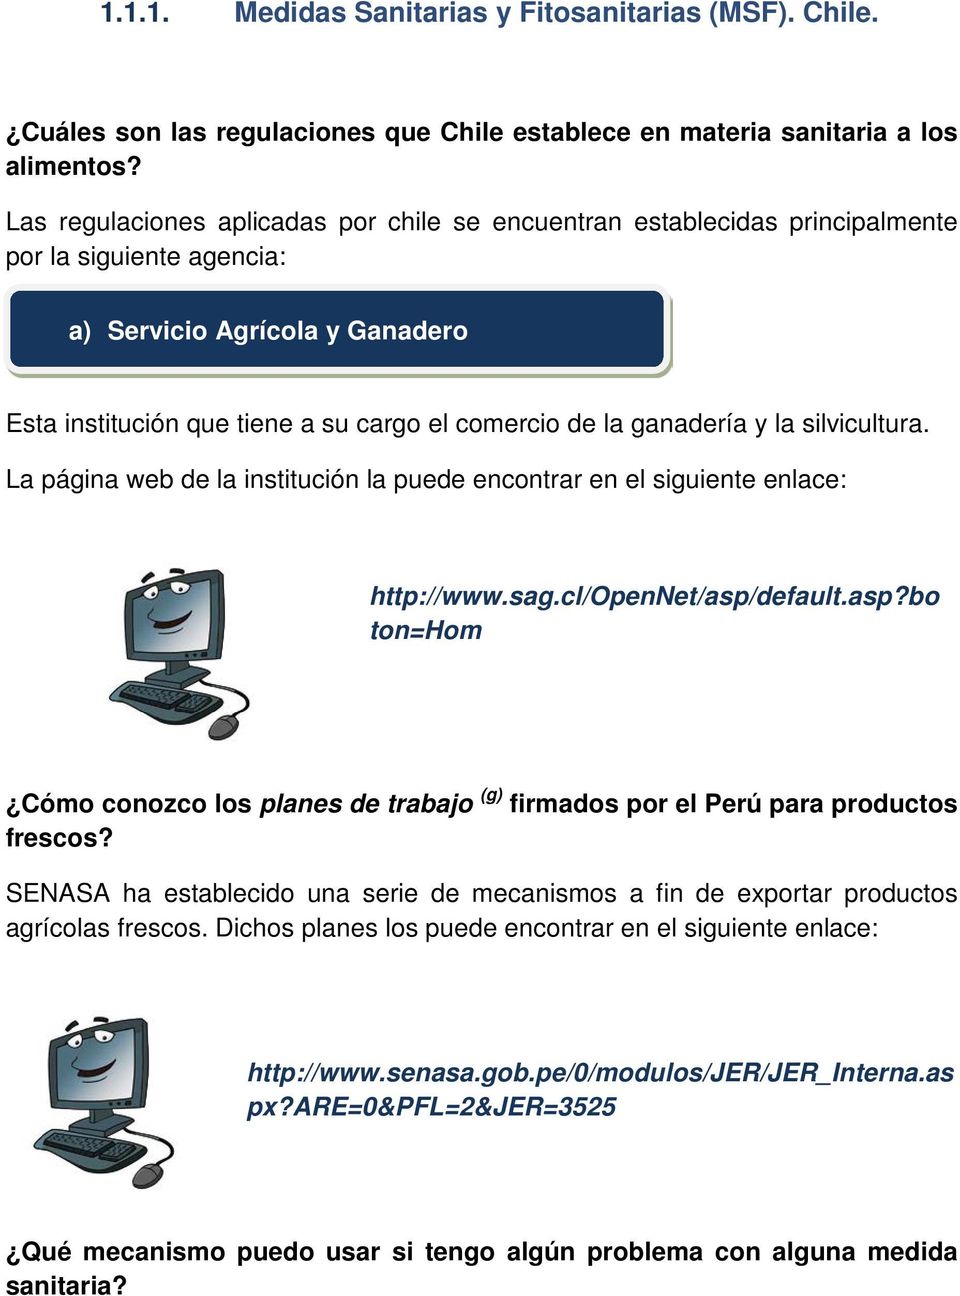 ganadería y la silvicultura. http://www.sag.cl/opennet/asp/default.asp?bo ton=hom Cómo conozco los planes de trabajo (g) firmados por el Perú para productos frescos?